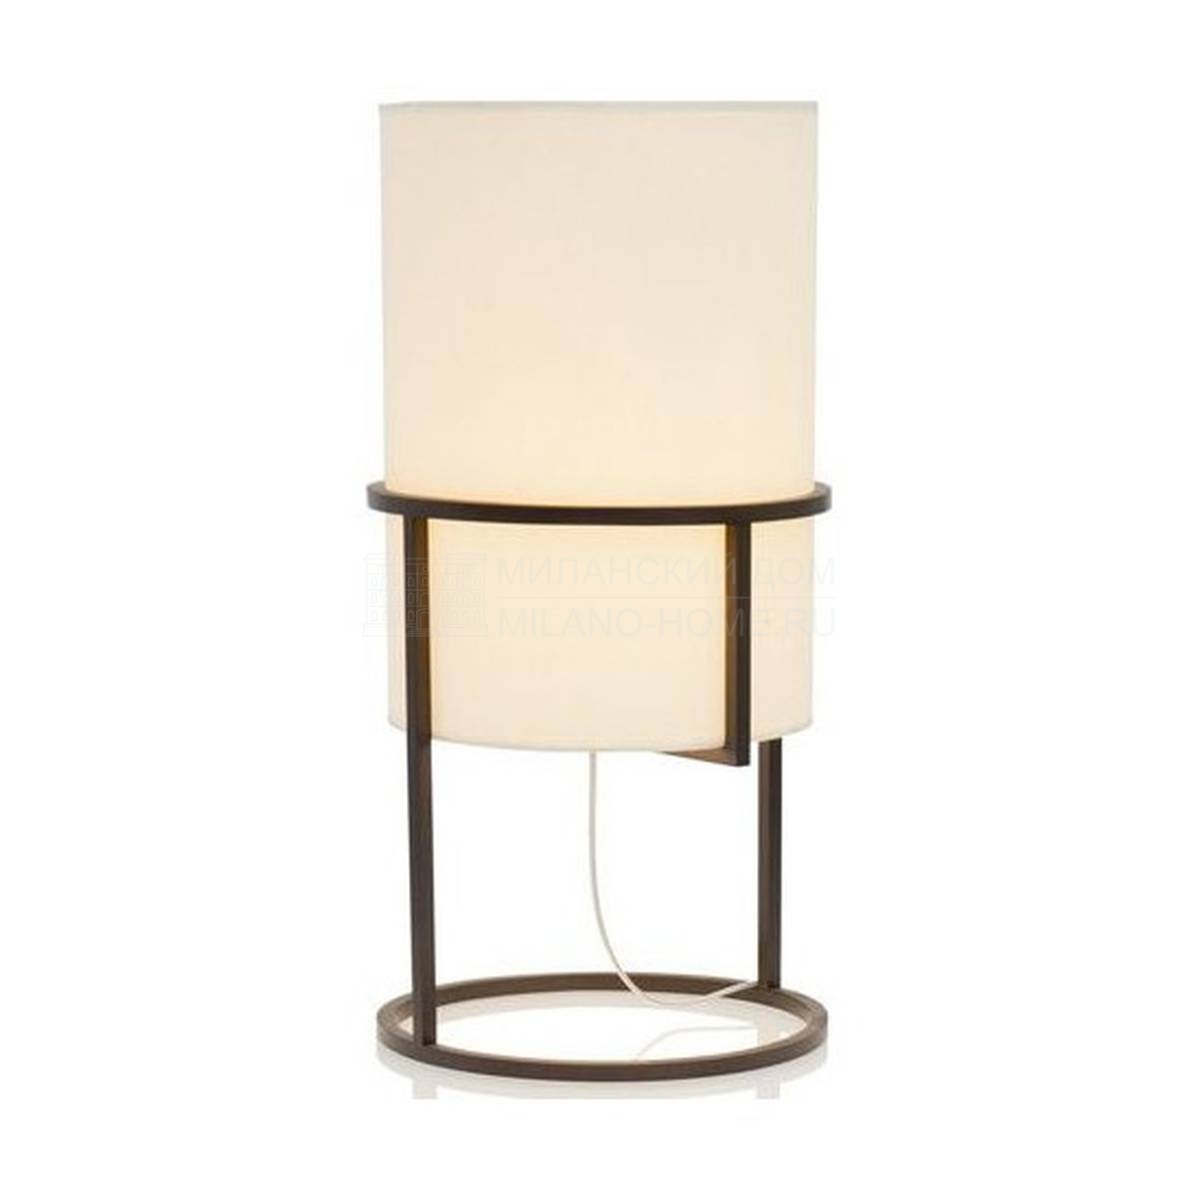 Настольная лампа Mikado Rond/table-lamp из Бельгии фабрики JNL 